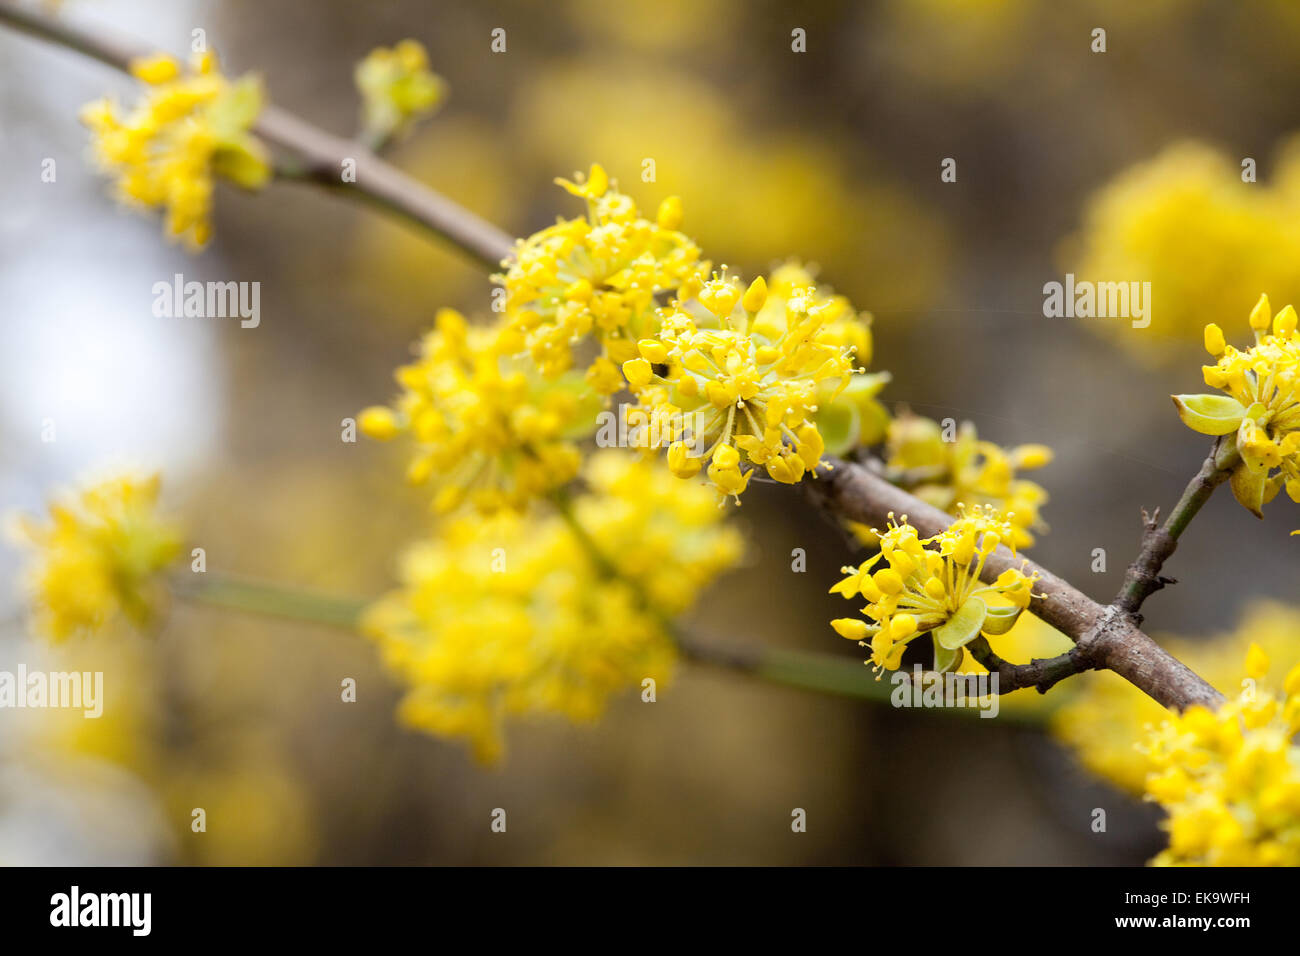 Fioritura di fiori gialli sui rami di un albero Foto Stock